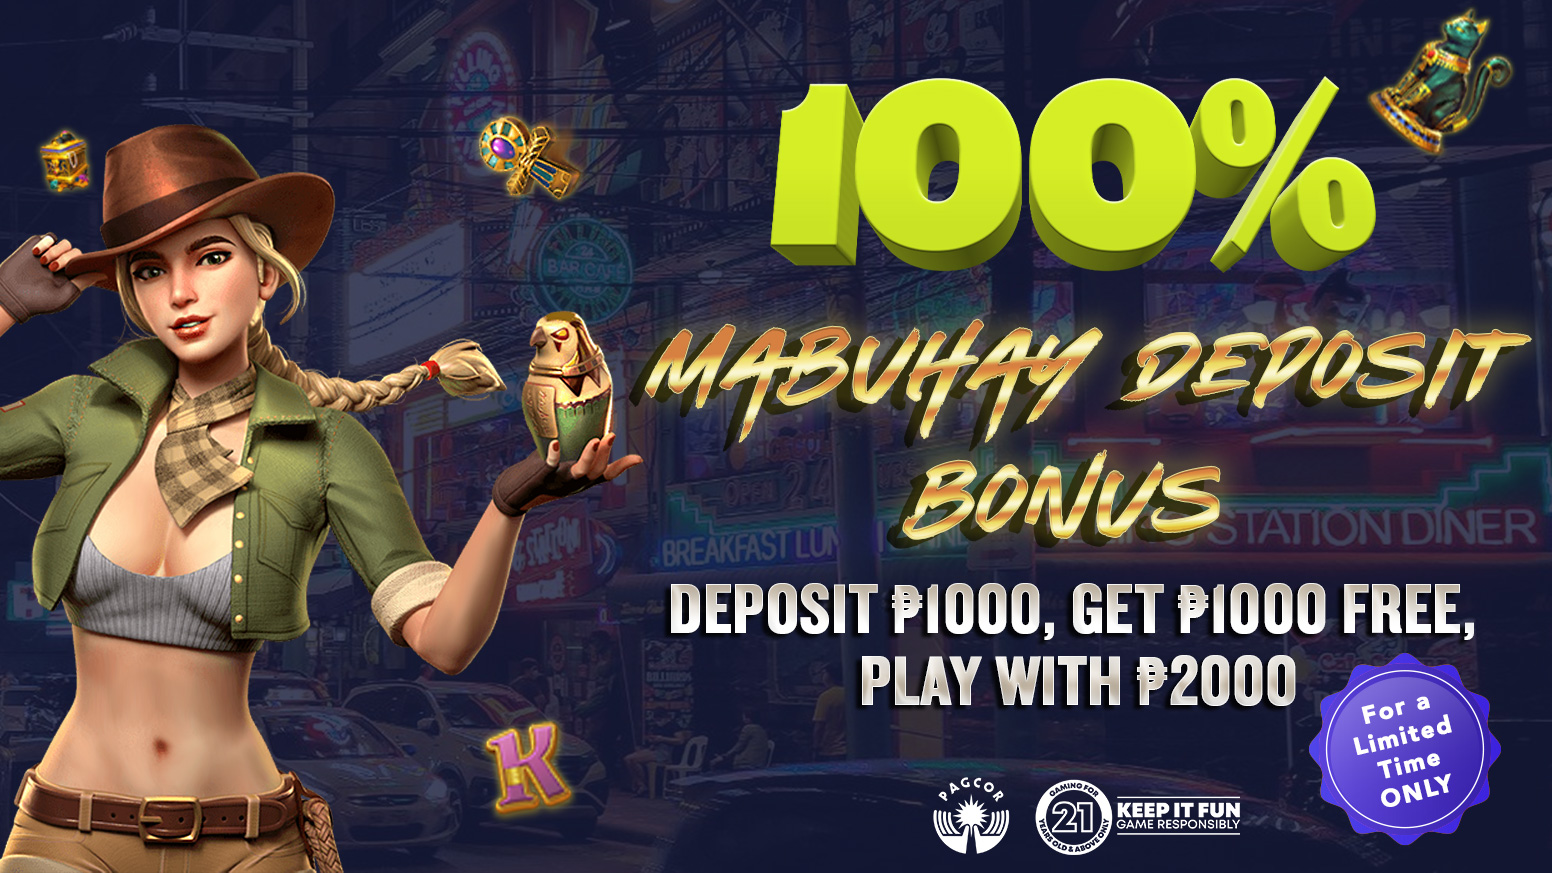 100% Mabuhay Deposit